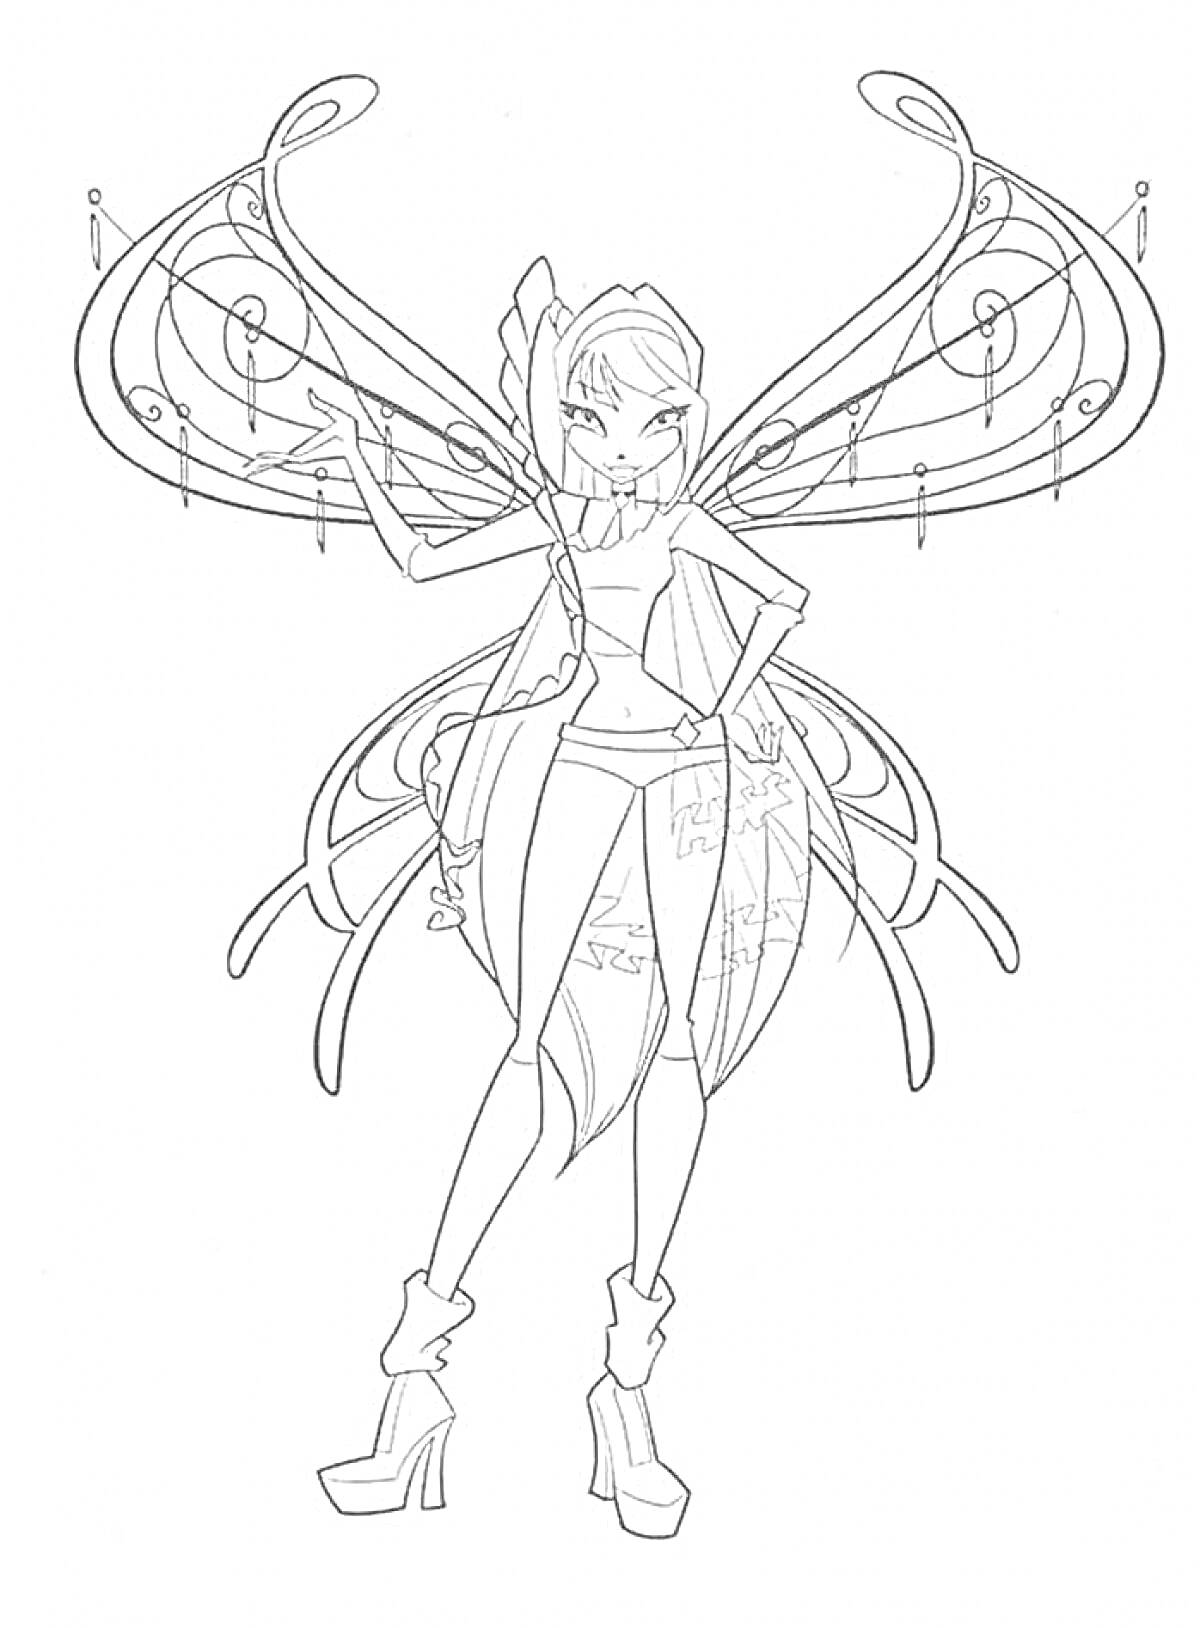 Раскраска Волшебница Винкс Беливикс с расправленными крыльями, стоящая в позе, с поднятым указательным пальцем